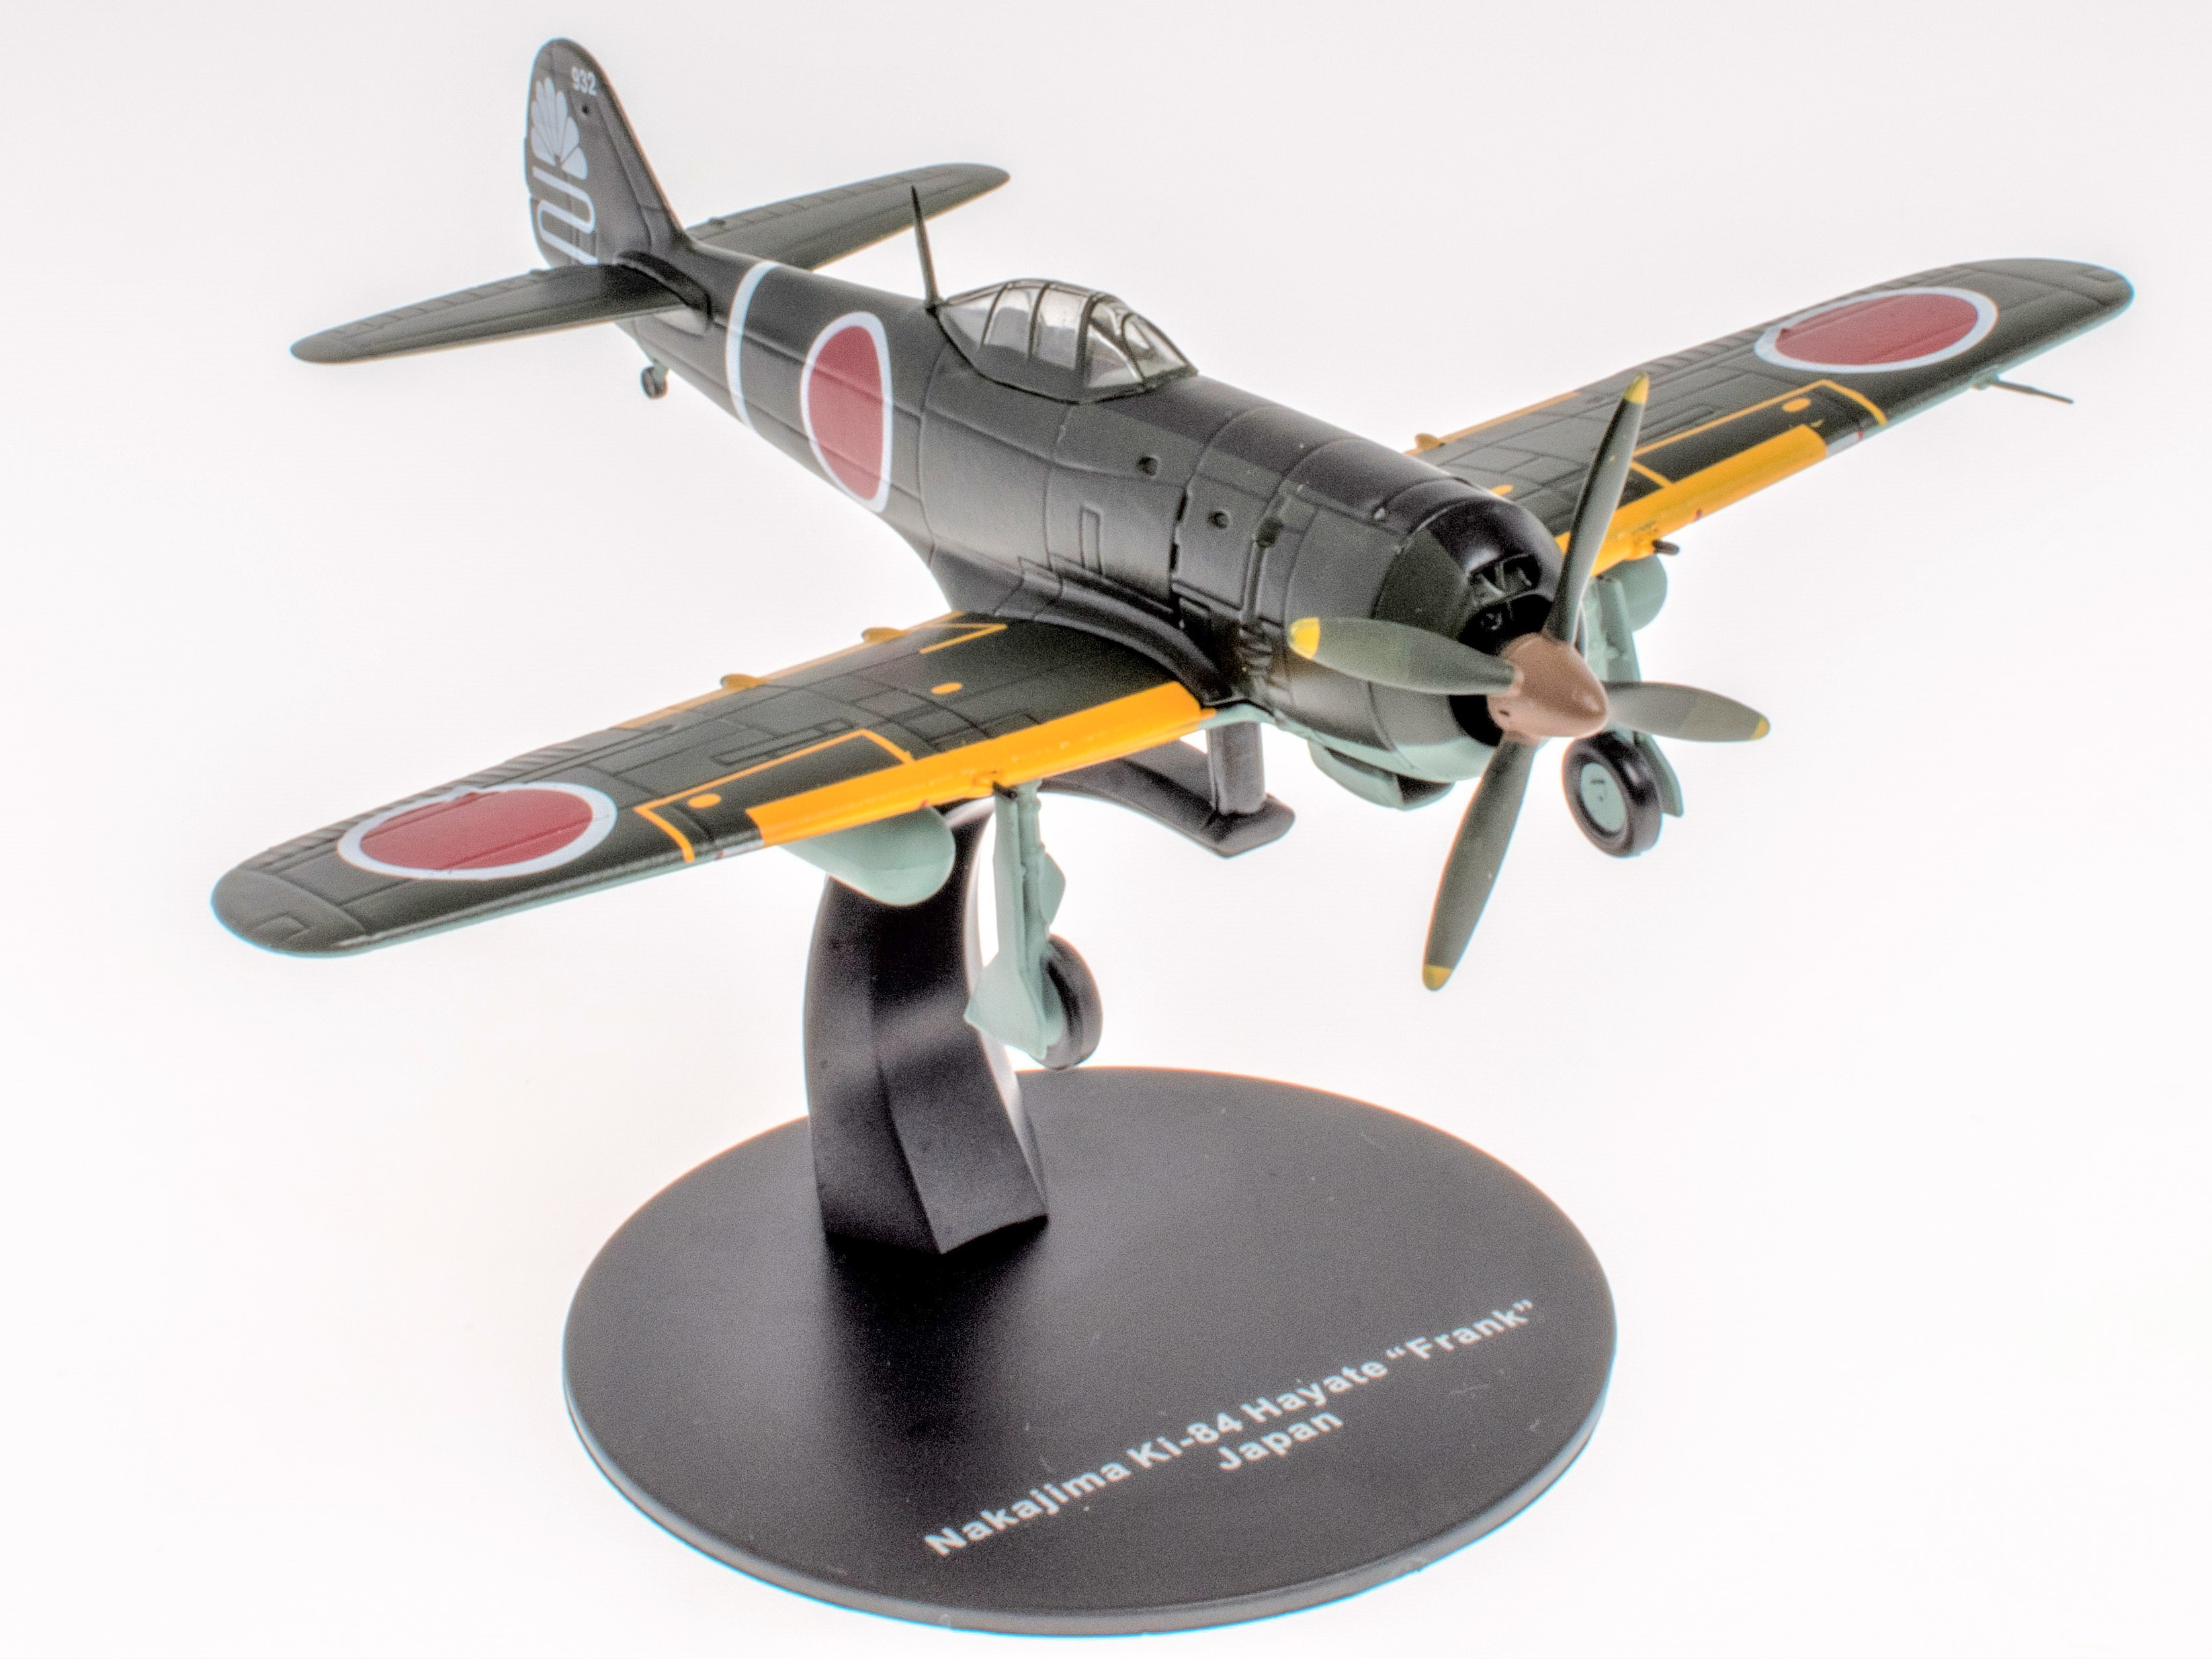 Nakajima Ki-84 Hayate "Frank" - Japan